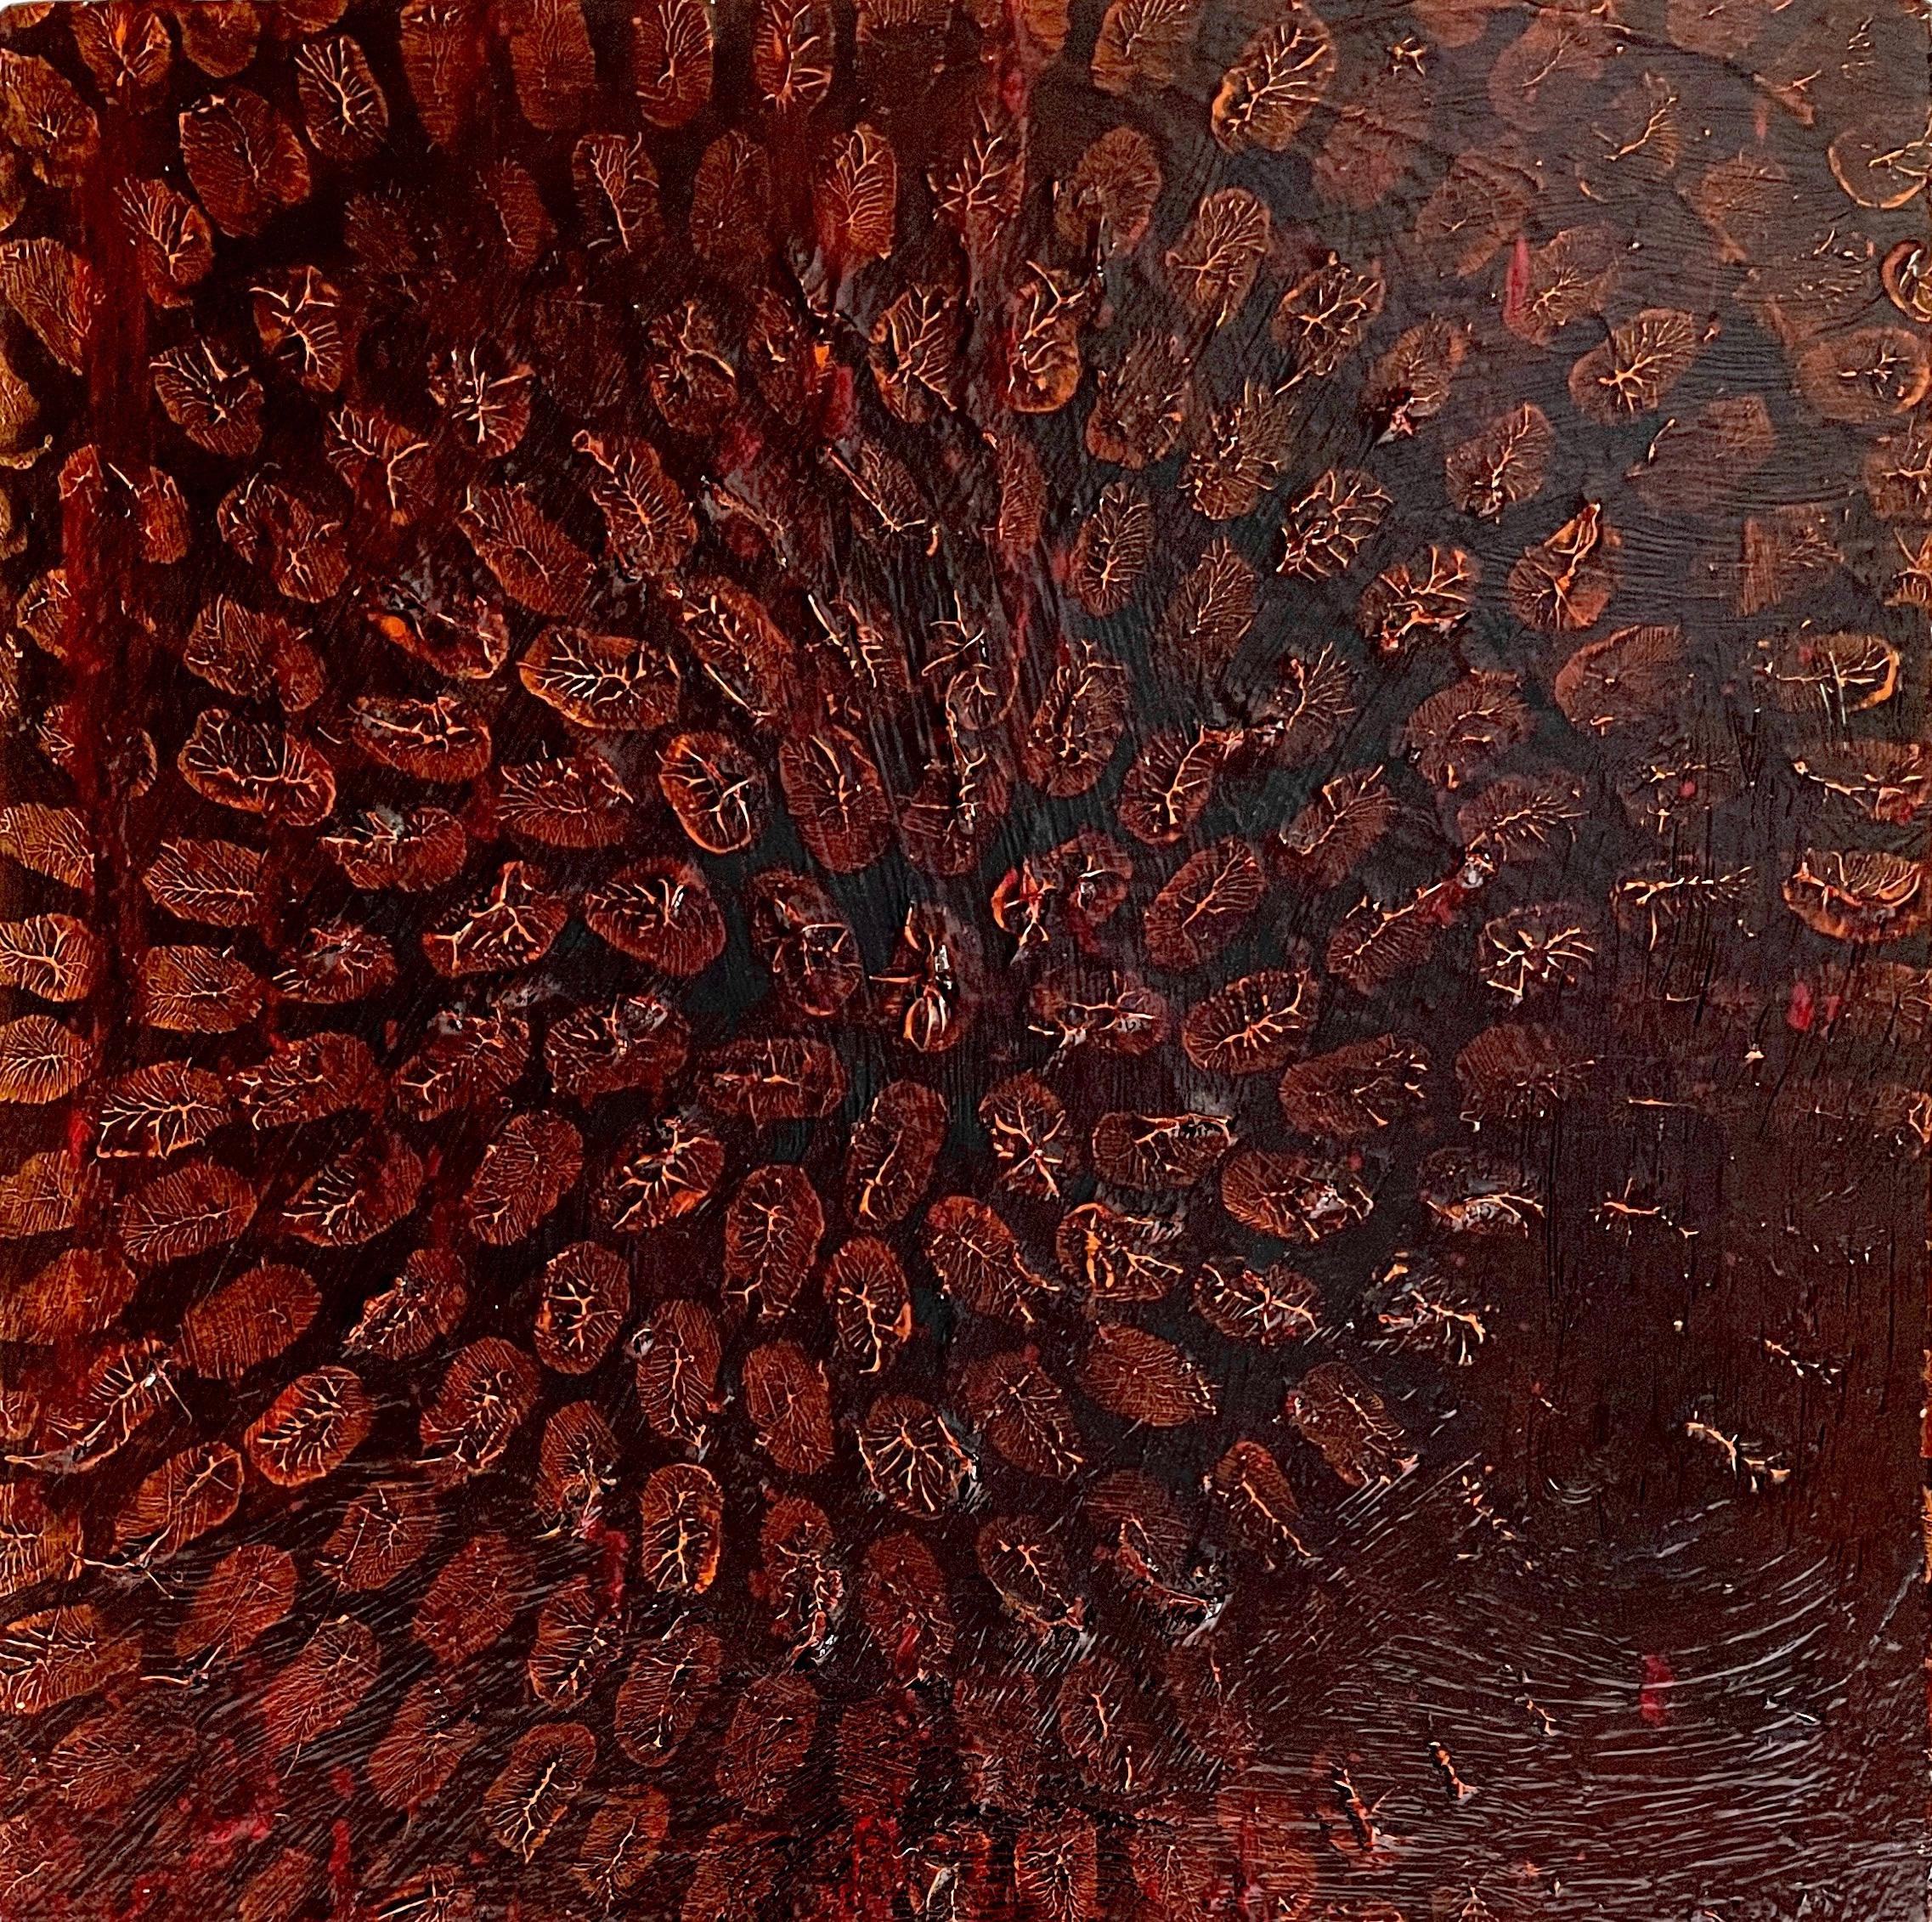 Abstract Painting Antonio Puri - Centre de table : peinture abstraite sur toile, tons terre foncée et or avec mandala en cercle